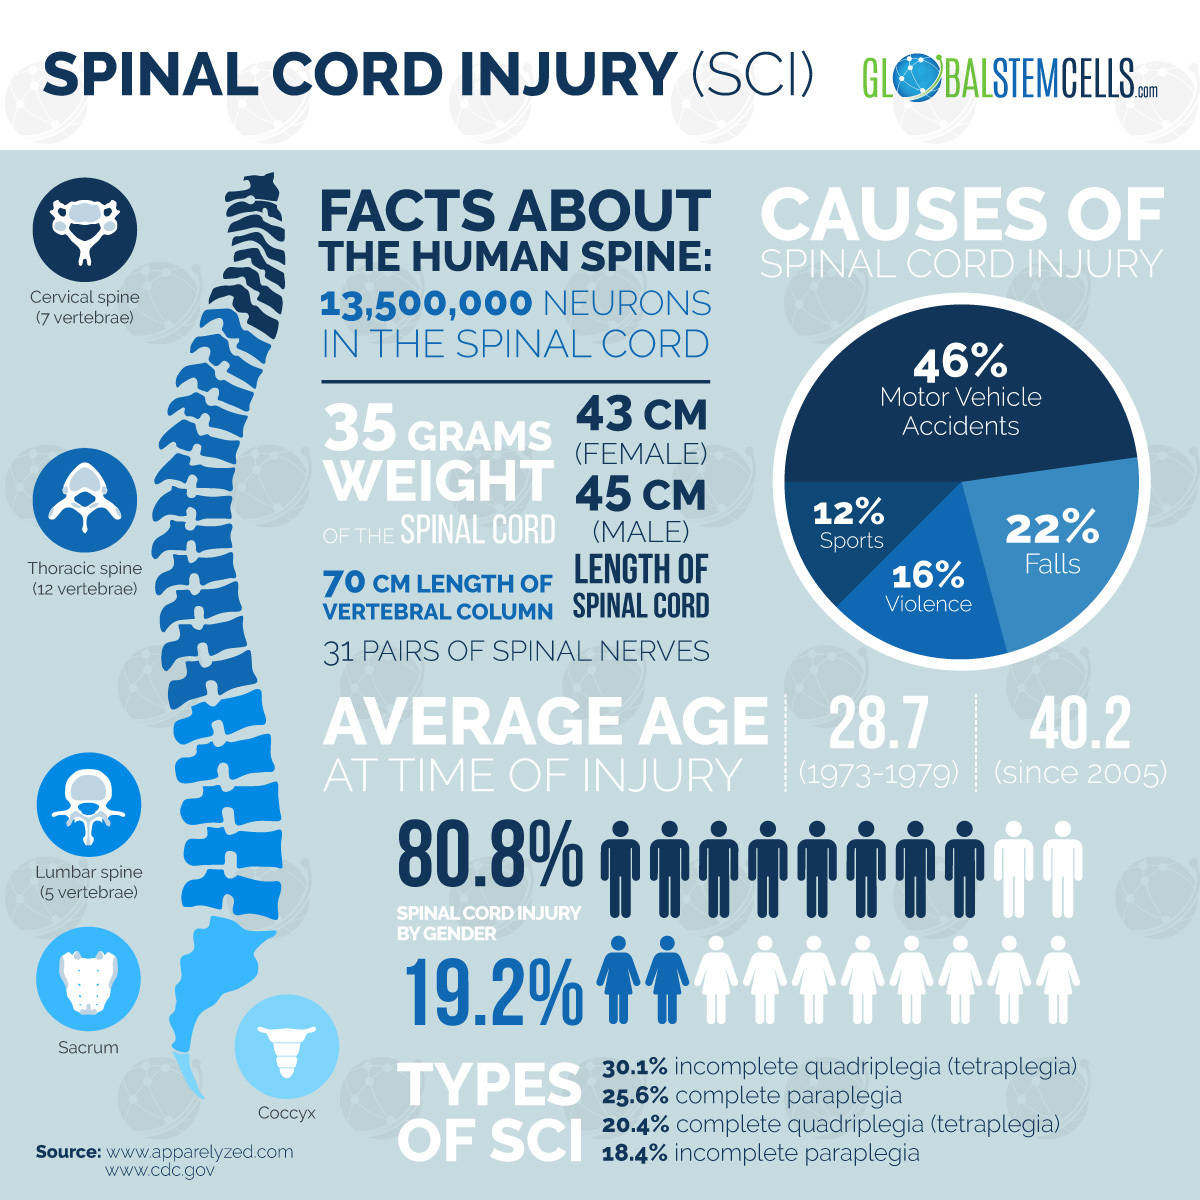 Spinal Cord Injury - Fact Sheet | Global Stem Cells